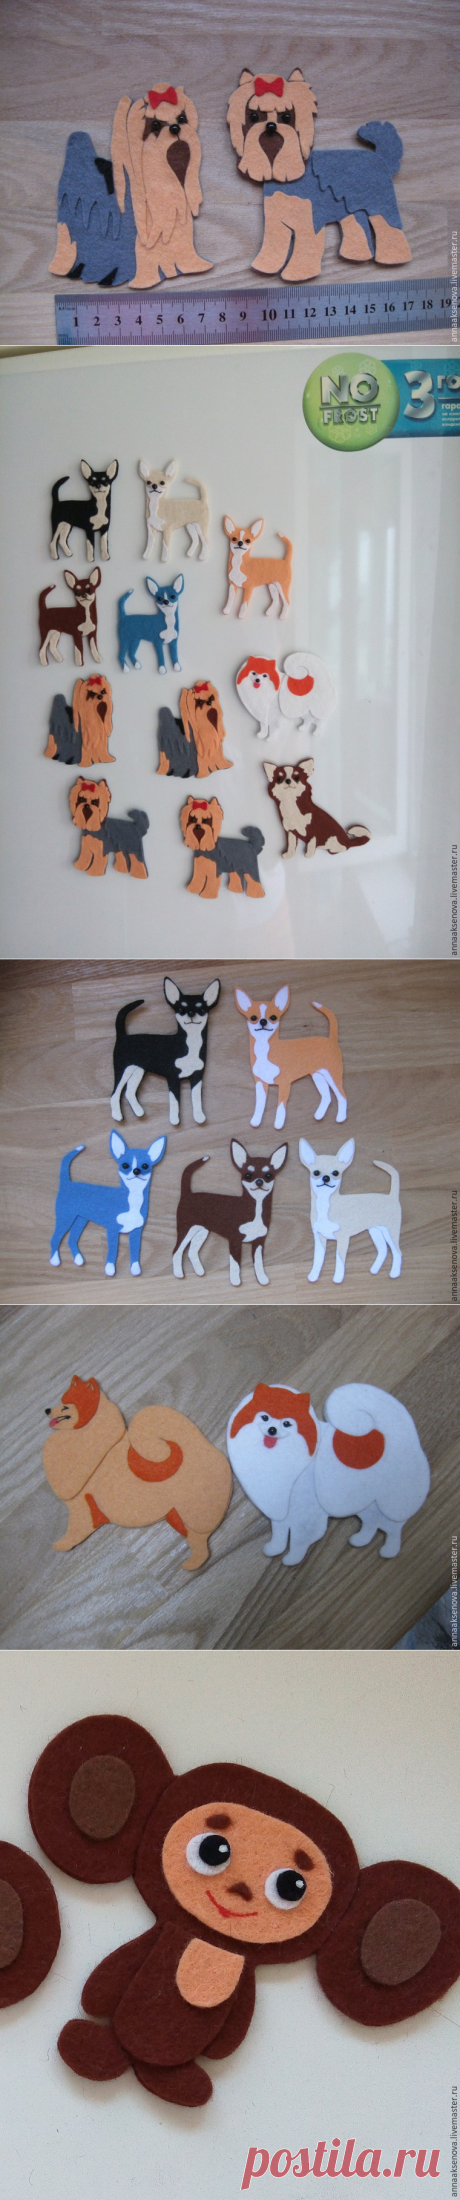 Собачка из фетра — оригинальный магнитик в подарок - Ярмарка Мастеров - ручная работа, handmade